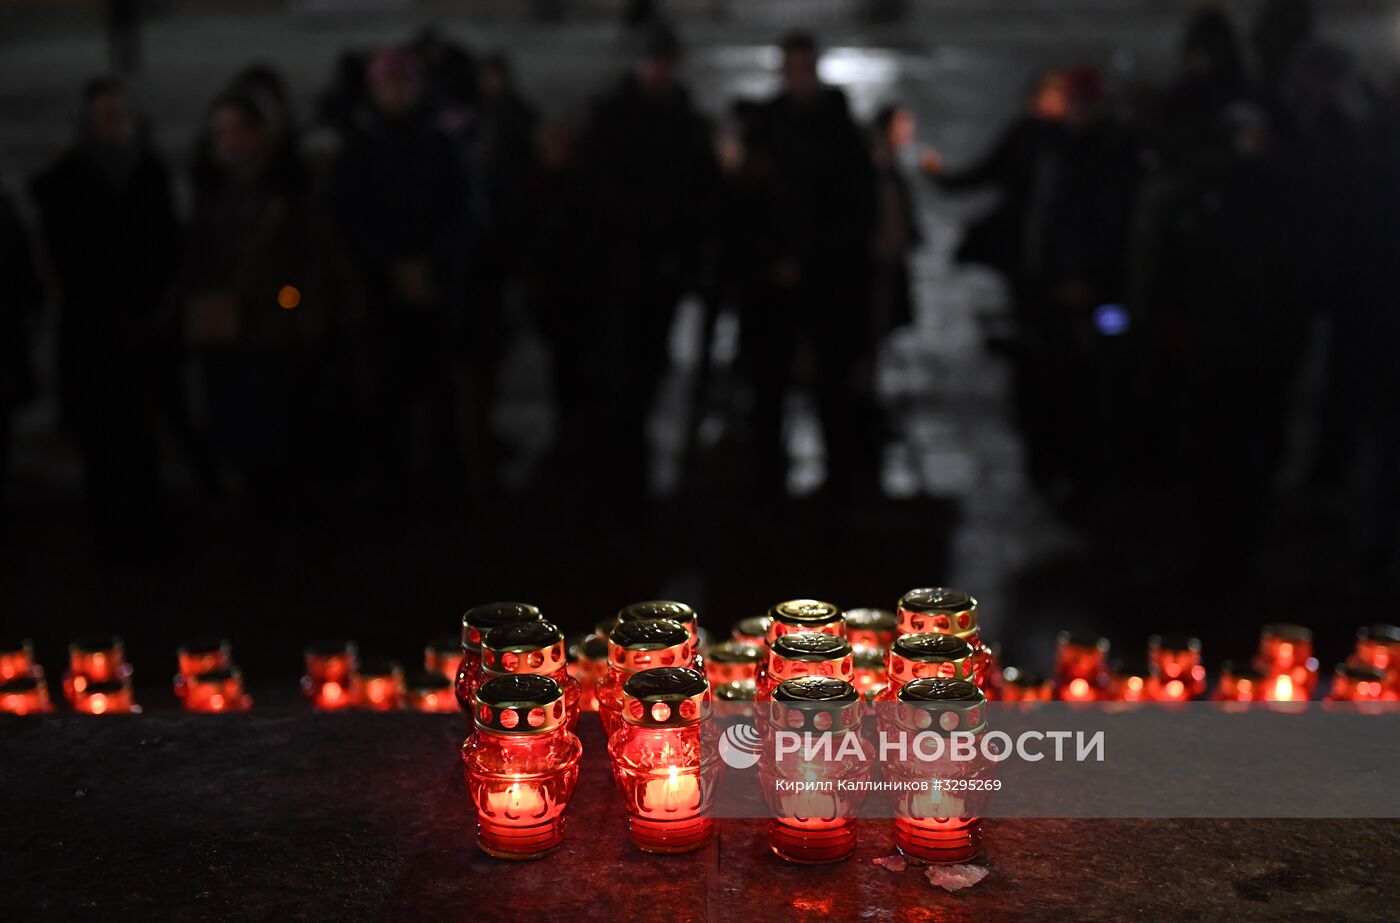 Акция памяти по погибшим в авиакатастрофе в Подмосковье